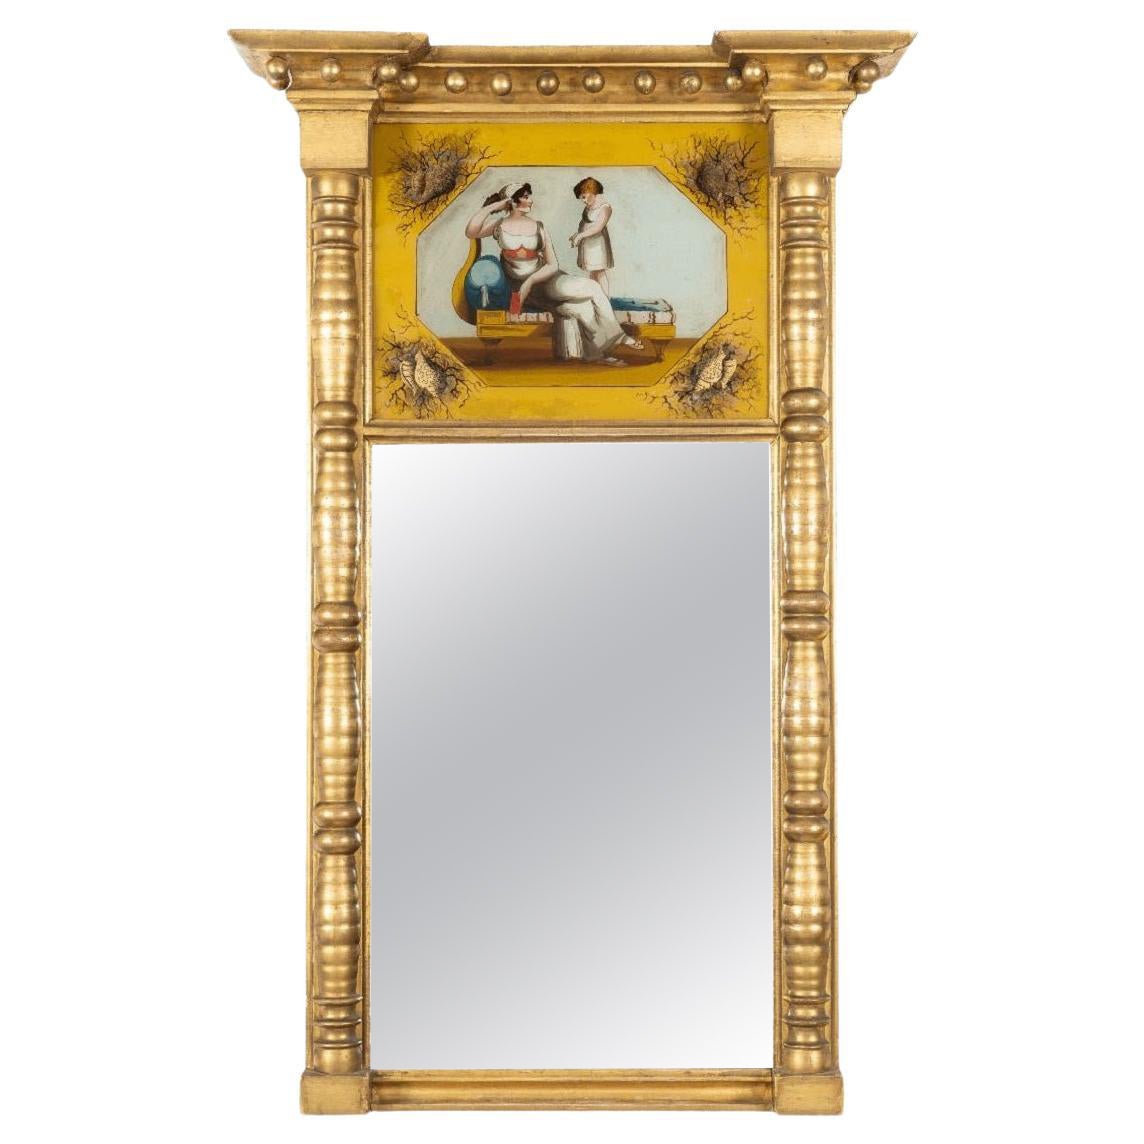 Miroir de tabernacle américain du 19ème siècle doré avec églomisé